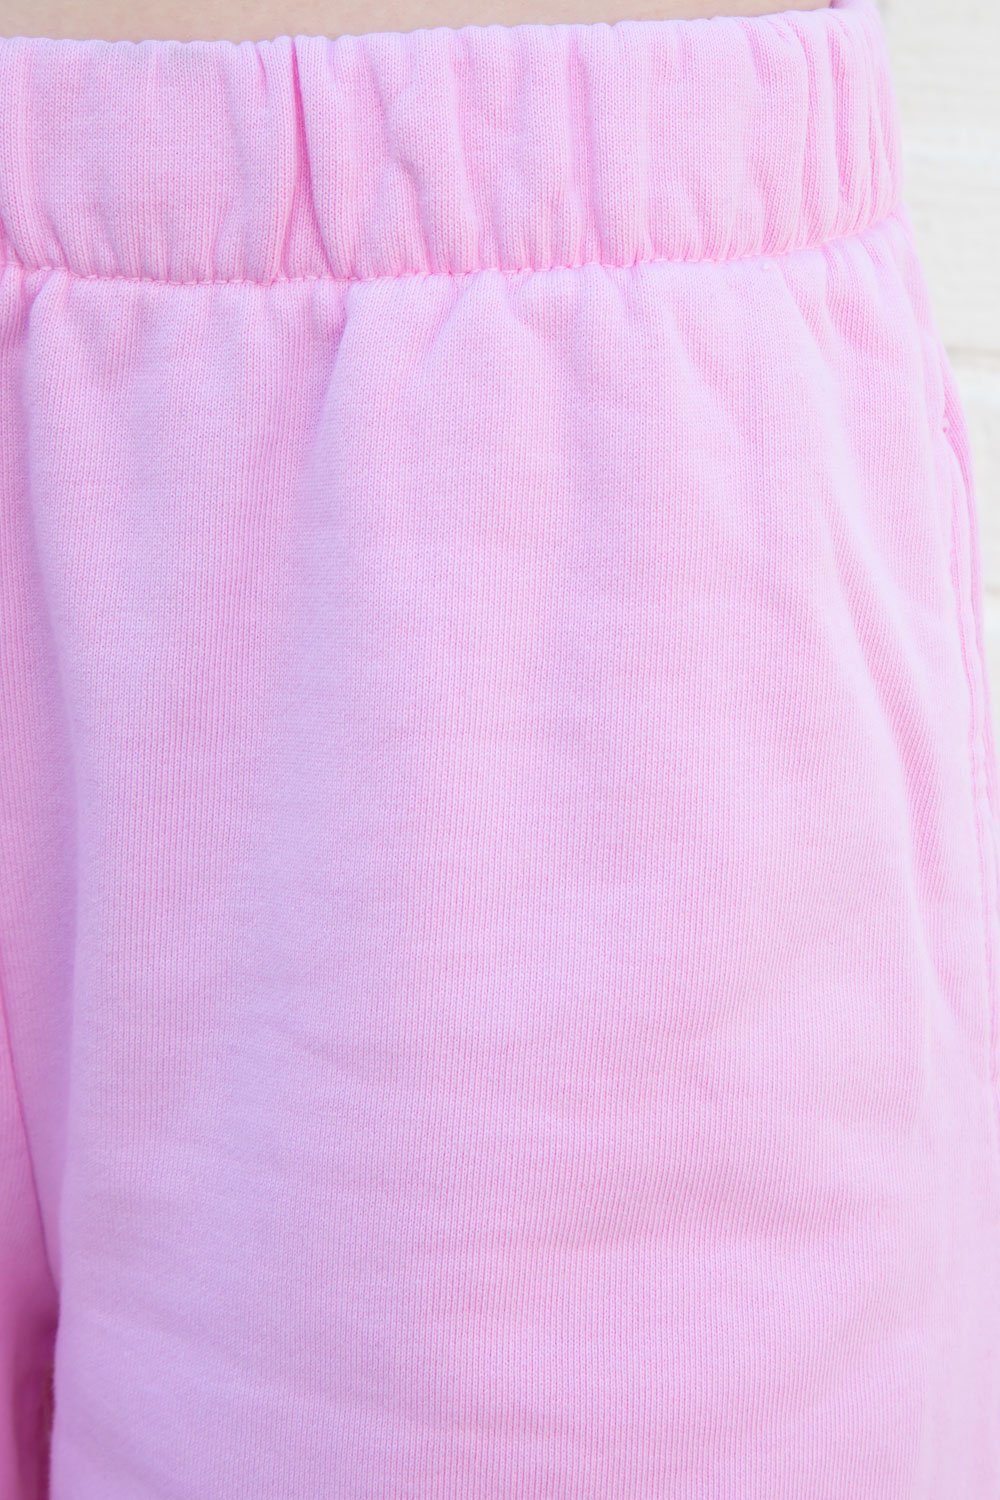 Bubblegum Pink / S/M